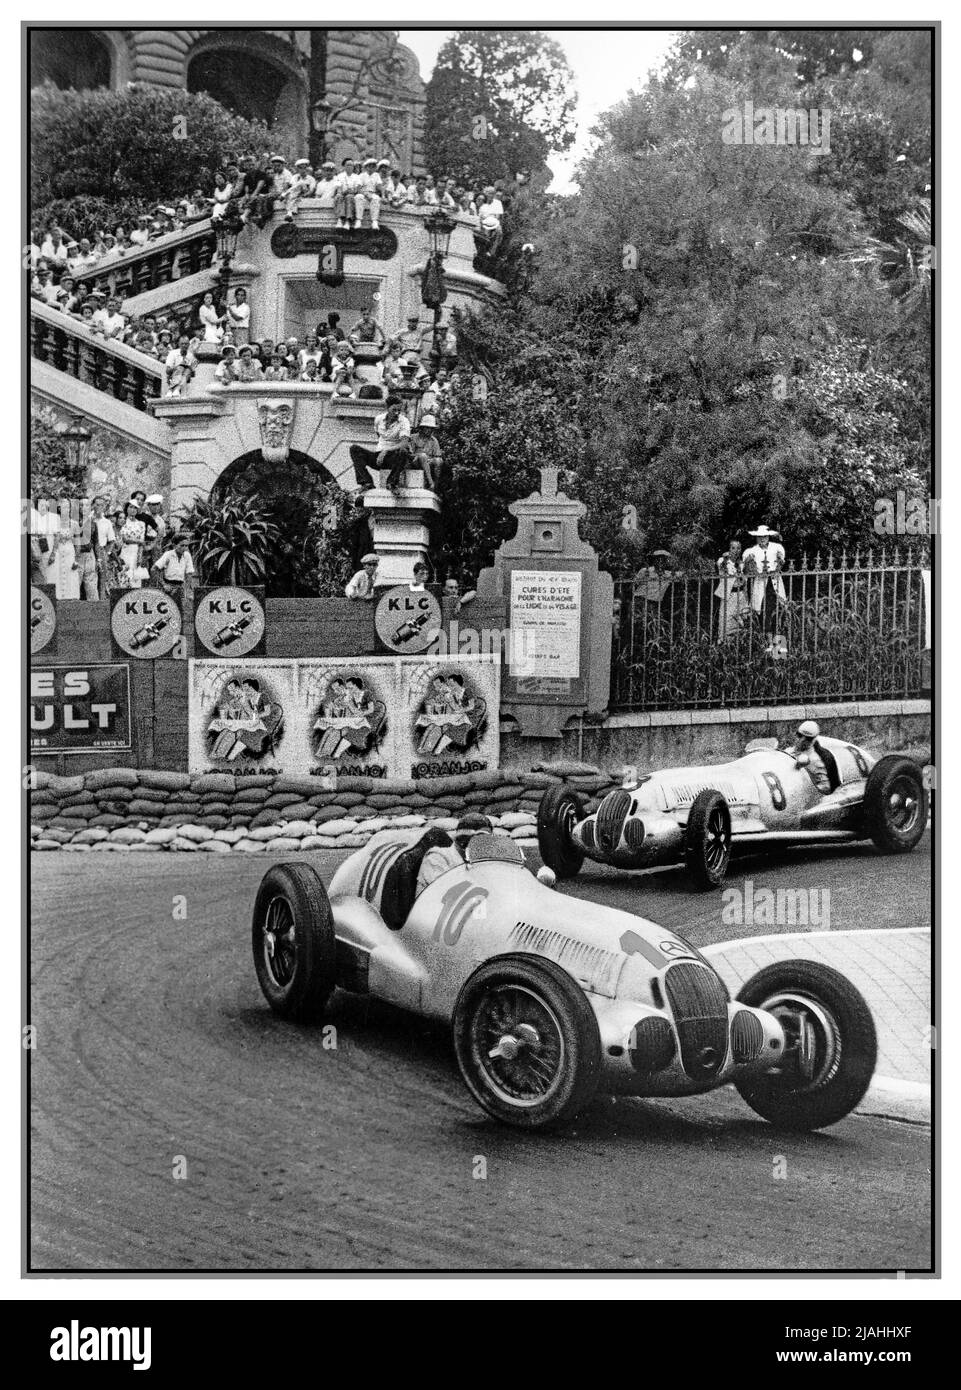 MONACO VINTAGE GRAND PRIX 1937 Mercedes 1 et 2 Manfred von Brauchitsch, vainqueur, Rudy Caracciola 2nd 1937 Monaco GP, a eu lieu cette année-là le 8 août. Loews épingle à cheveux. Ces Mercedes siver Arrows étaient deux tours devant Christian Kautz 3ème place dans une autre Mercedes W125. Banque D'Images